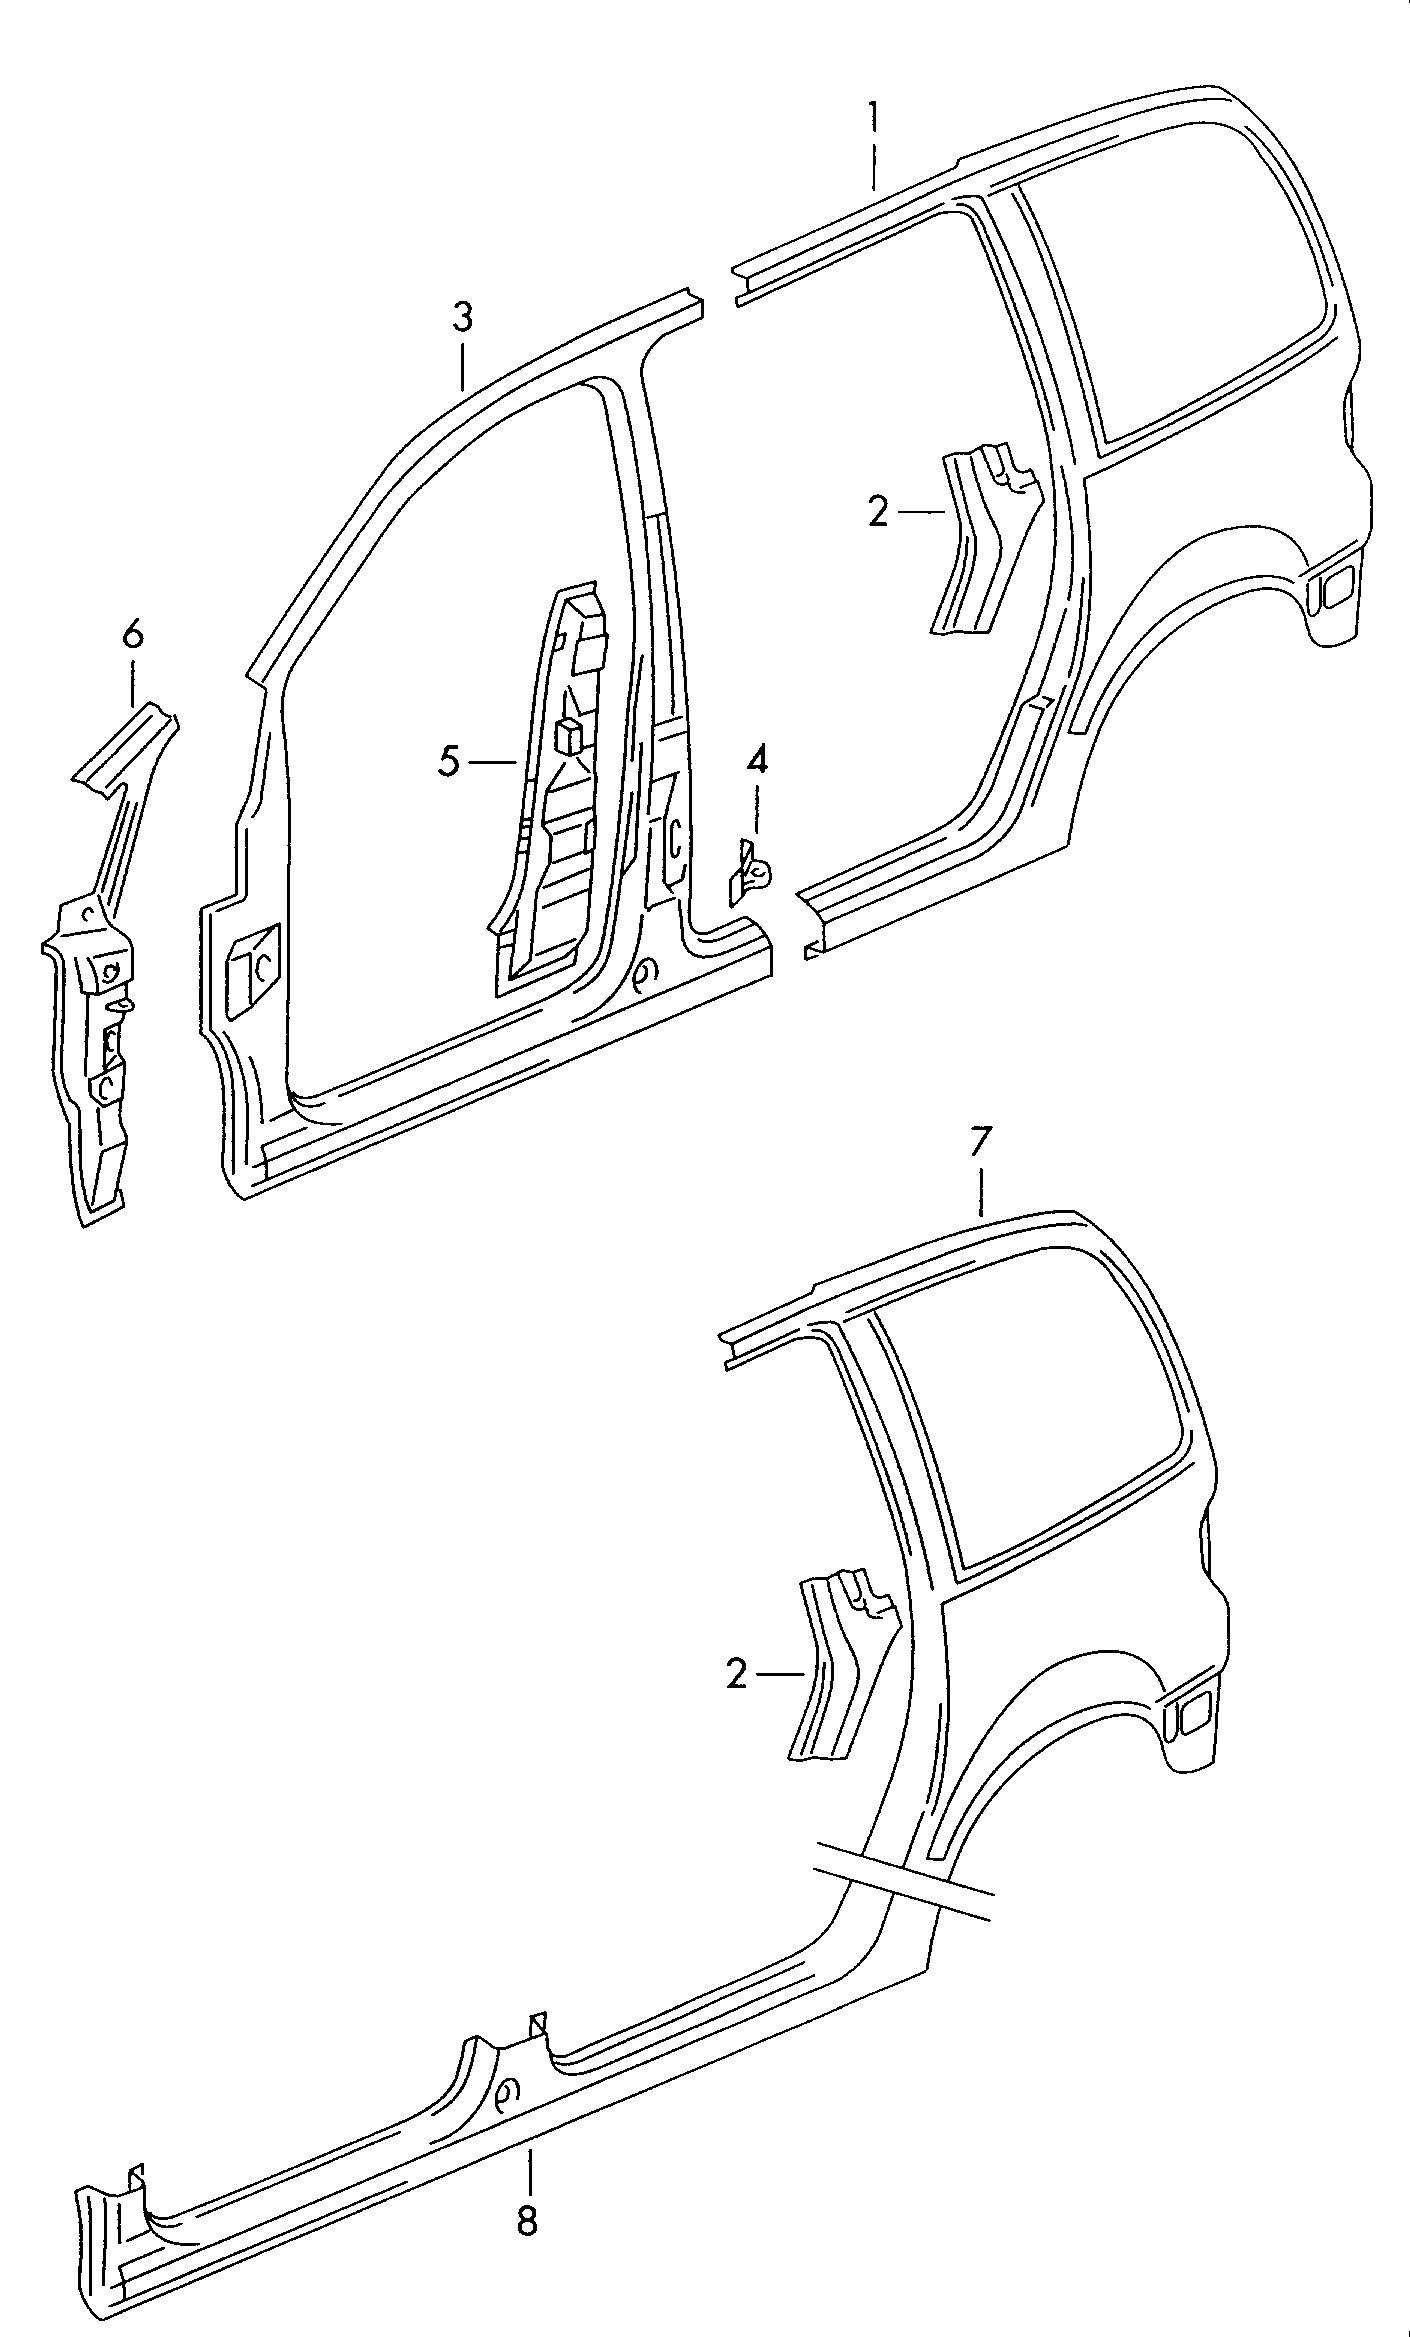 piezas de recorte para
pieza lateral - Alhambra(AL)  